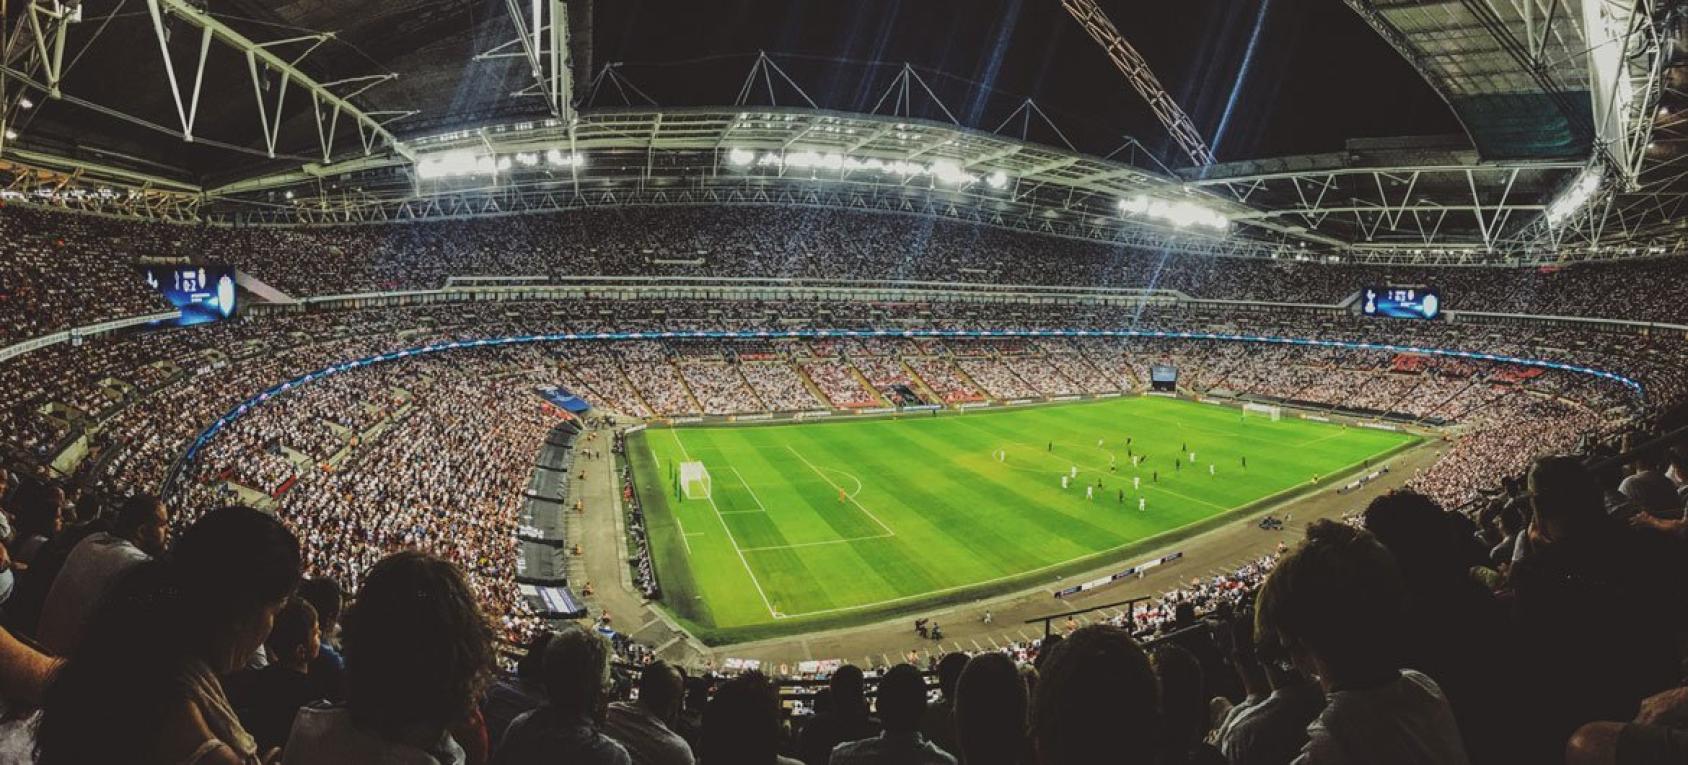 Unsplash/Mitch Rosen Aficionados al fútbol viendo un partido en el estadio de Wembley, en Inglaterra.